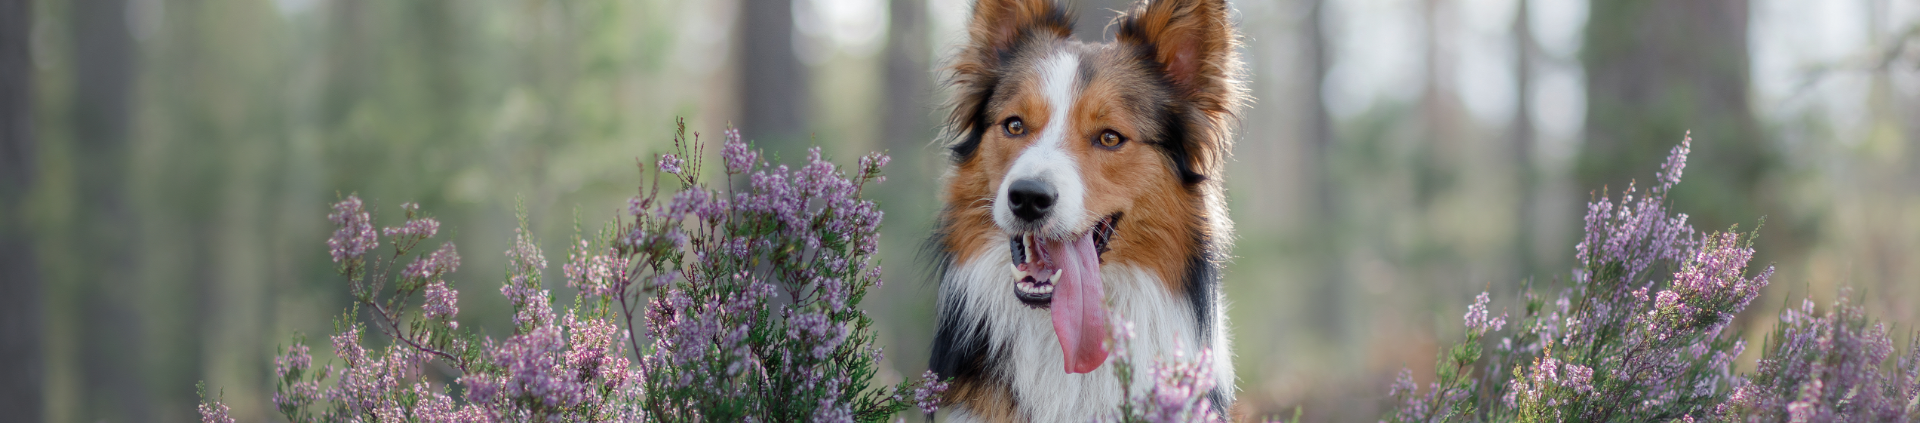 århundrede Shipley Thanksgiving Find hundskov i Danmark | Oversigt med hundeparker